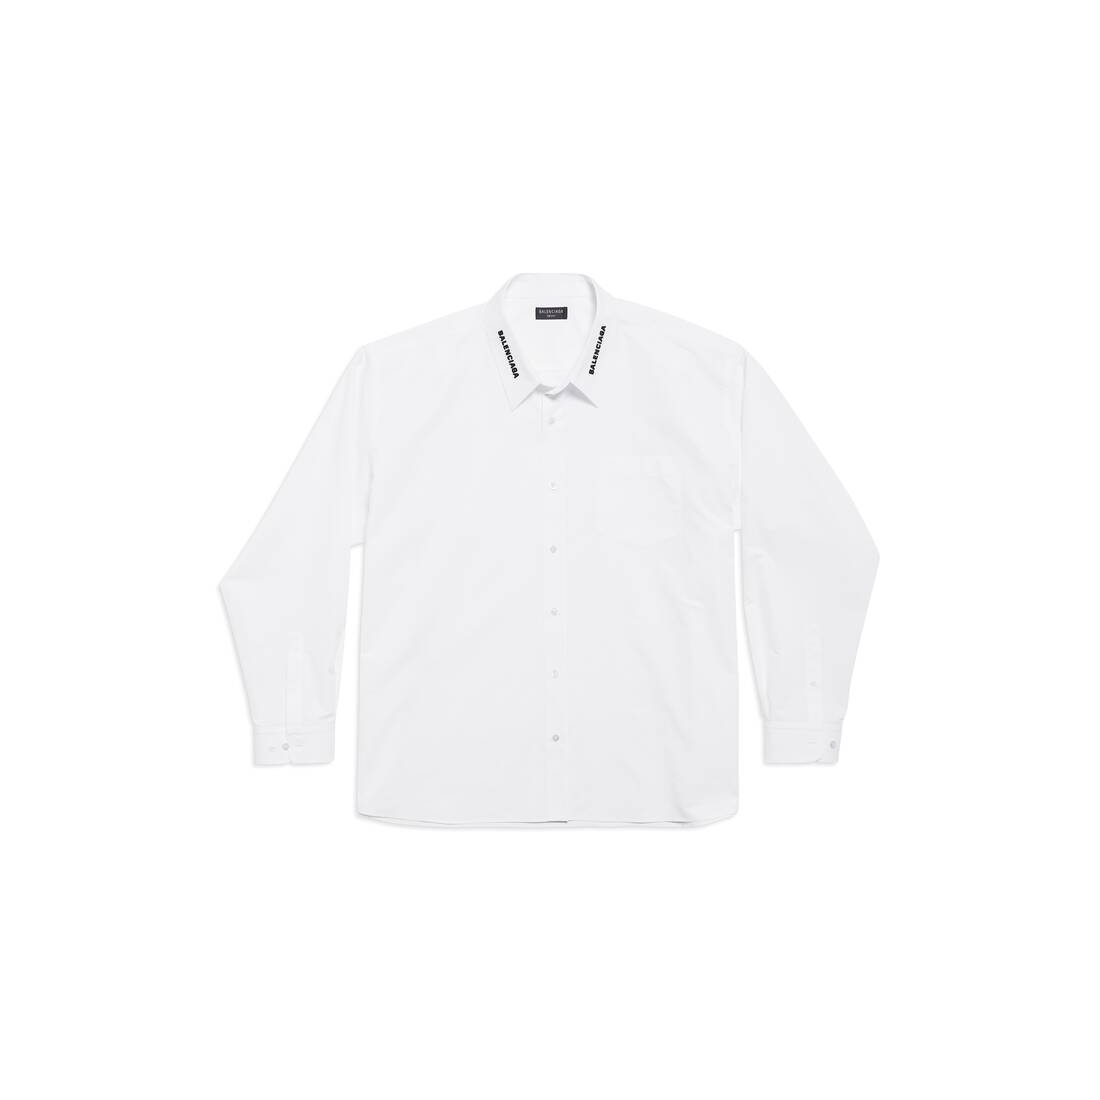 Balenciaga Dropped Neckline Shirt Oversized in White/black | Balenciaga US